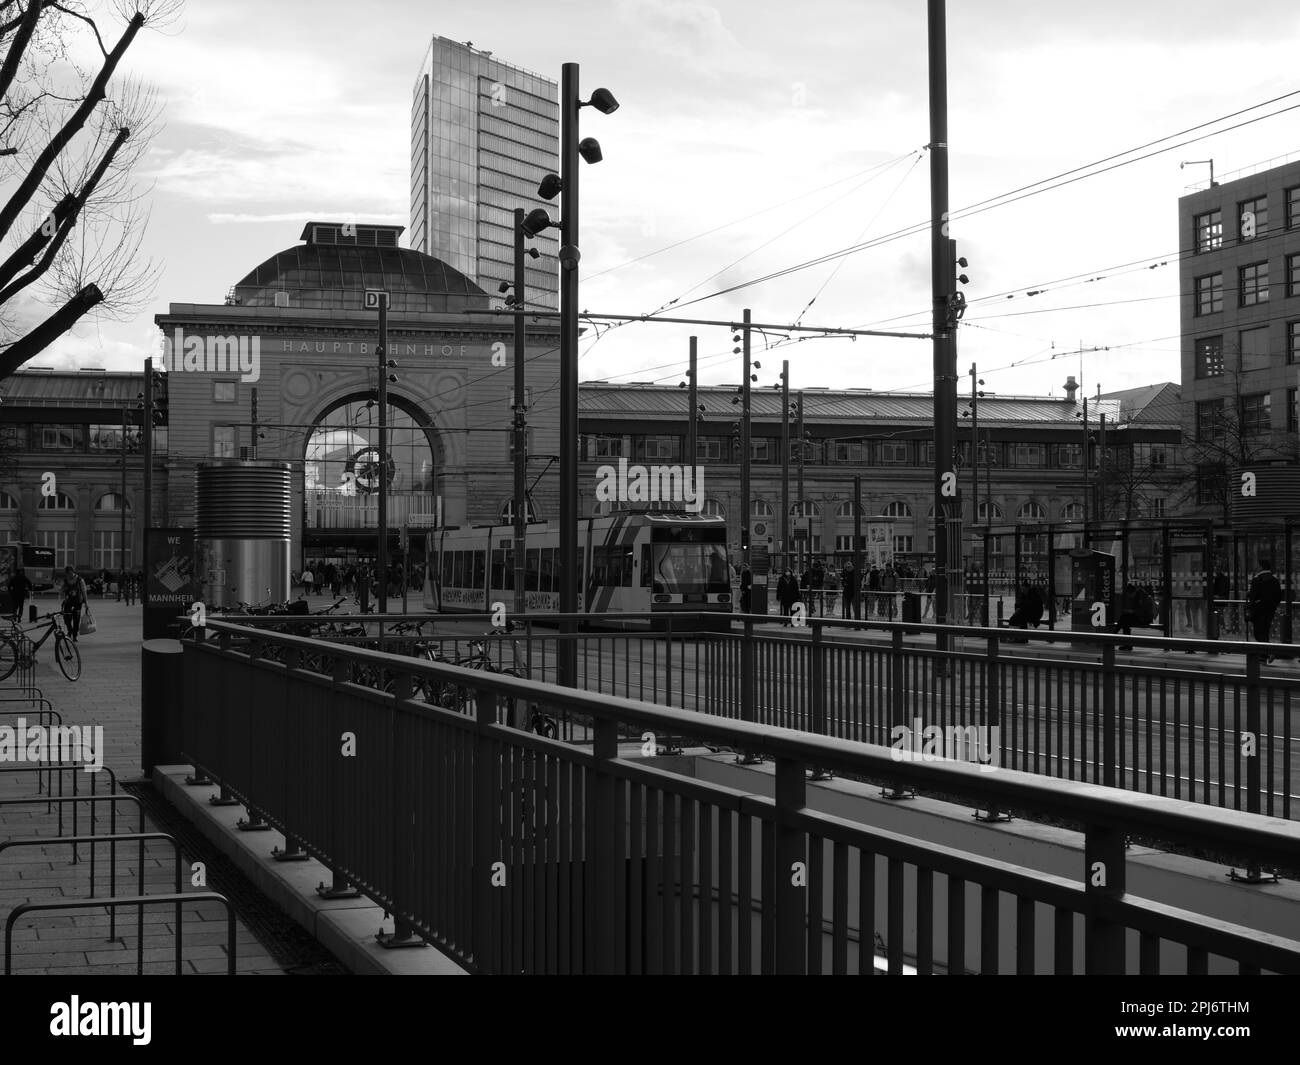 Foto di fronte alla stazione centrale di Mannheim. Immagine in bianco e nero. Foto Stock